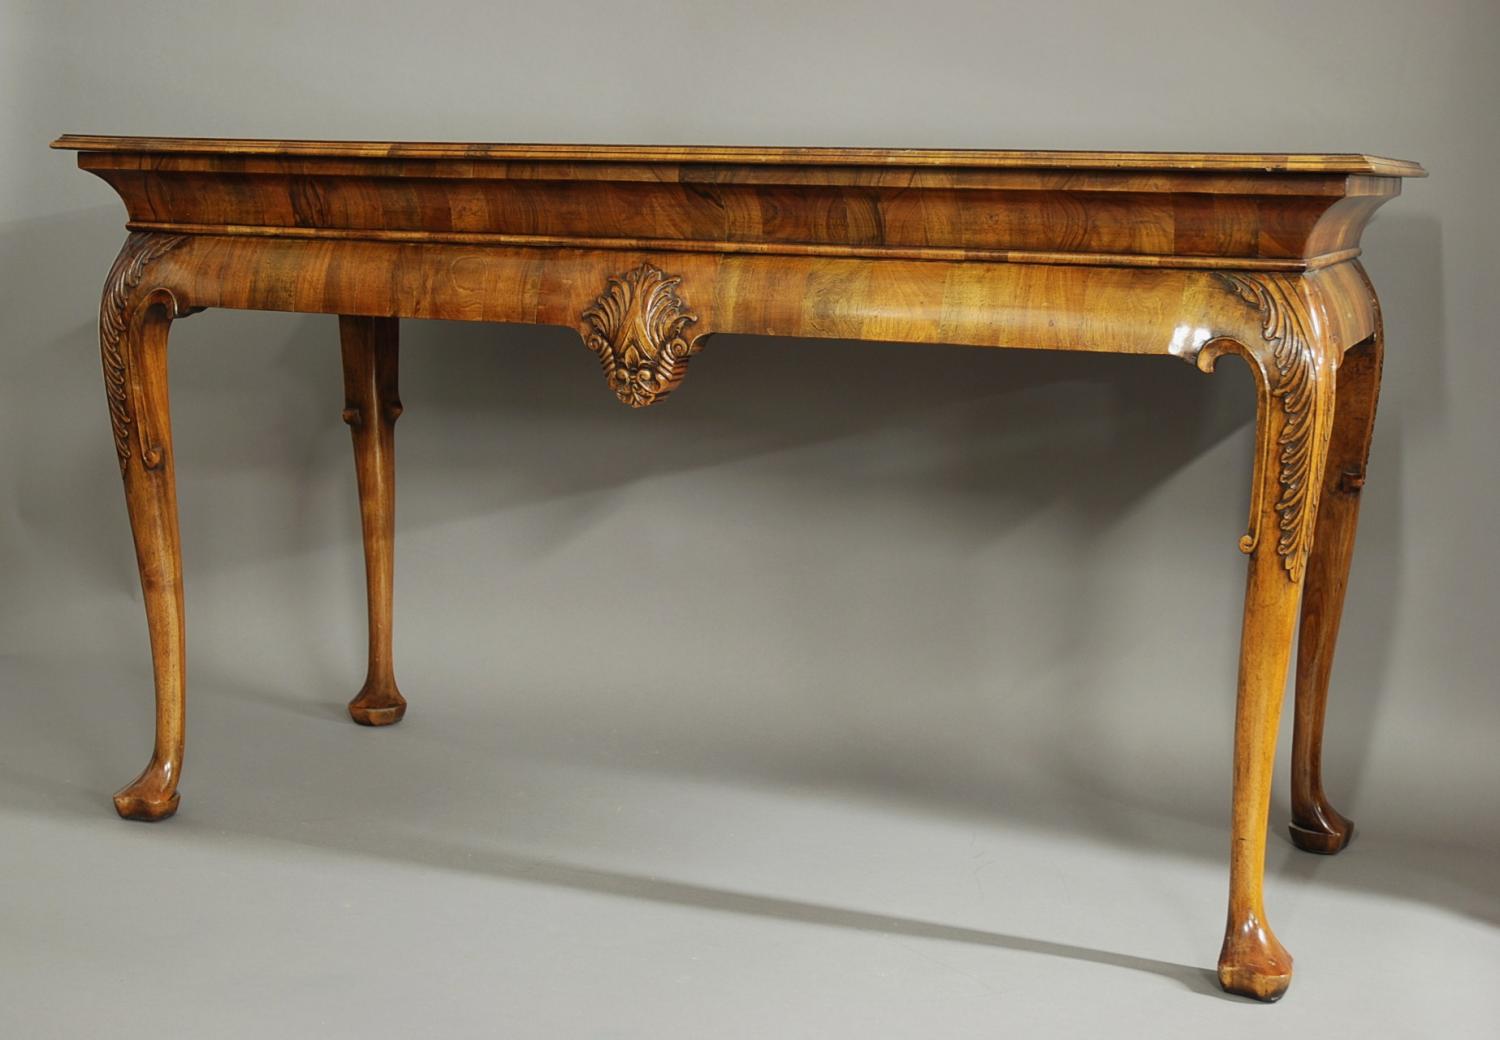 Queen Anne style walnut side table